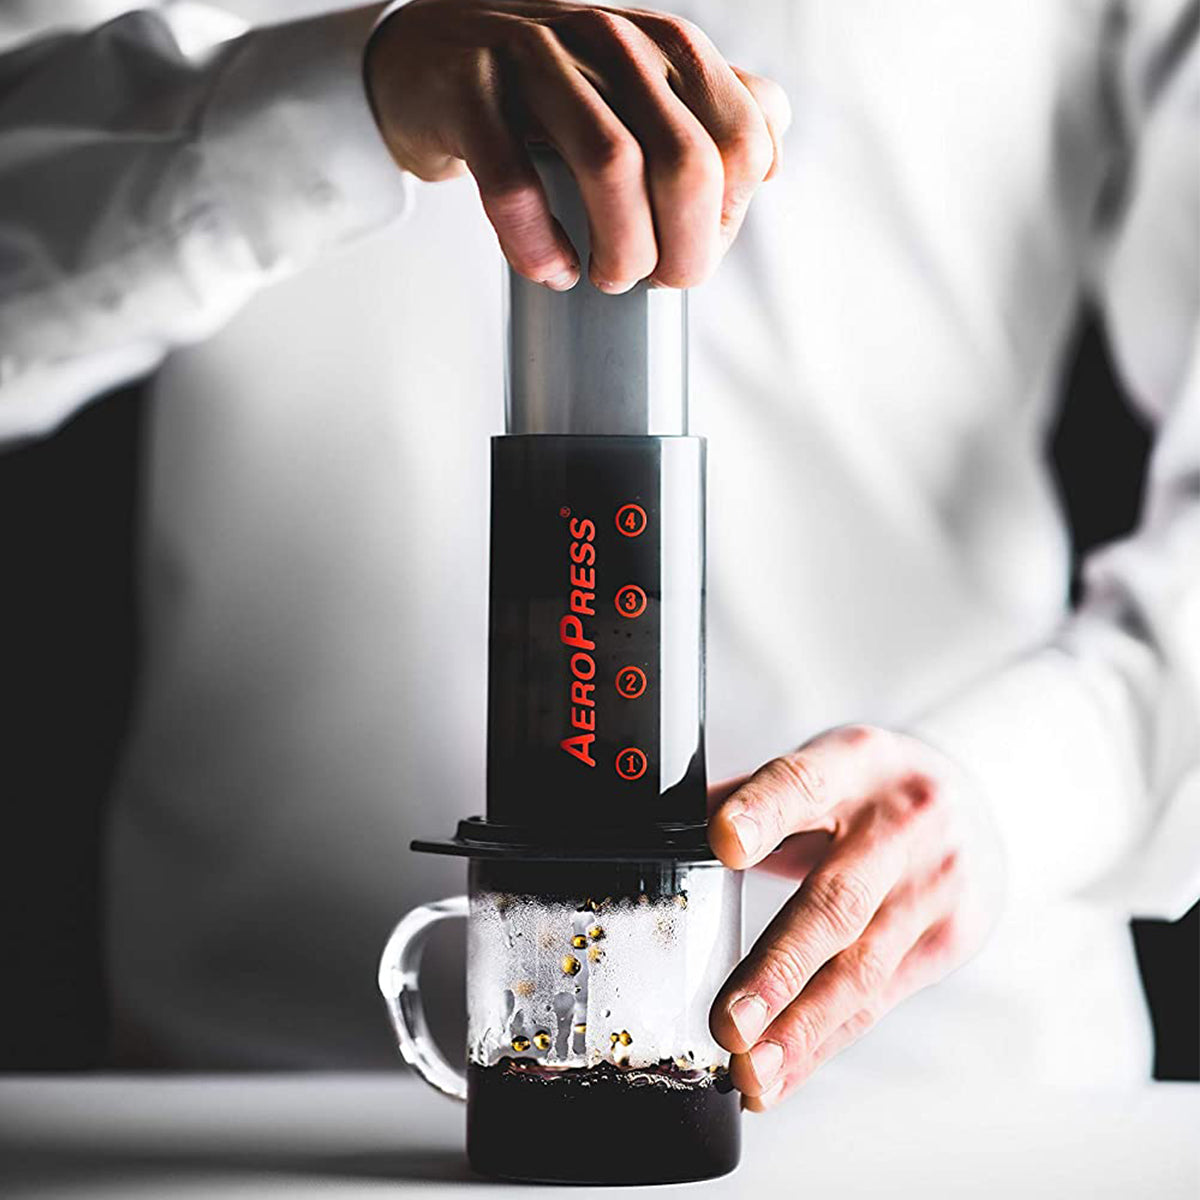 AeroPress Original Single Cup Coffee Maker, 3-in-1 American, French Press &  Espresso Style, Gray 